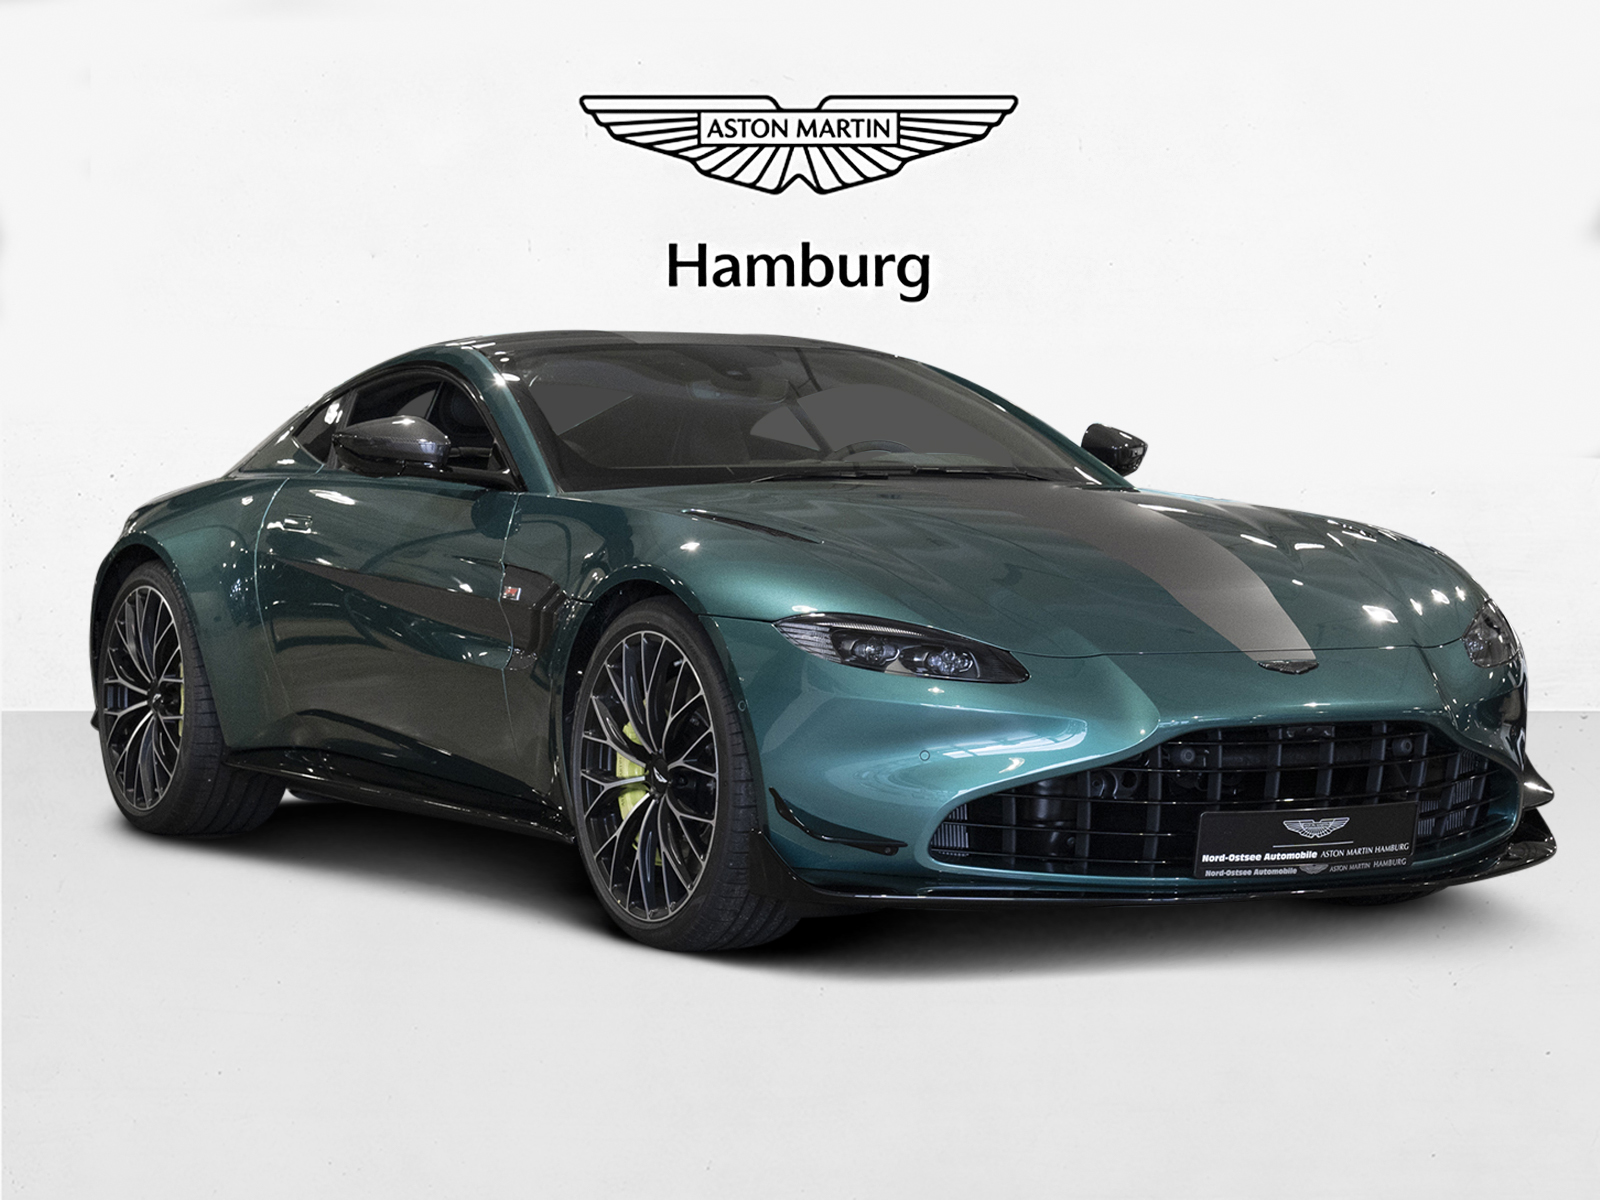 Aston Martin V8 Vantage F1 Coupe - Aston Martin Hamburg